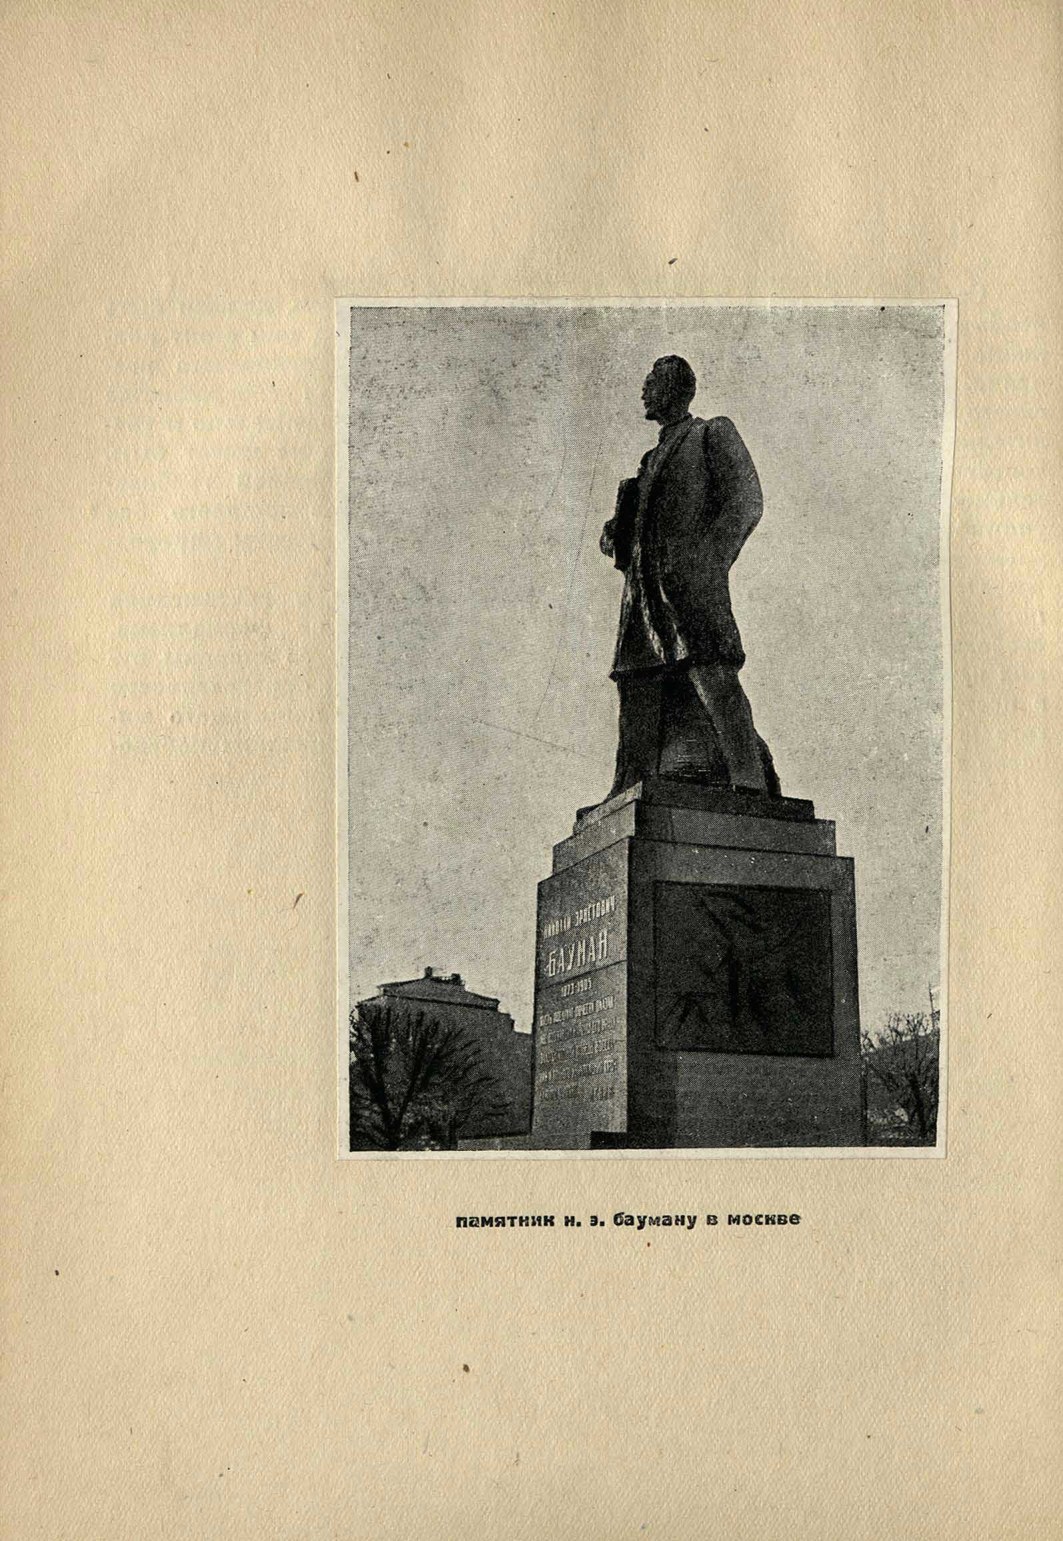 Скульптор Борис Данилович Королев. Памятник Н. Э. Бауману в Москве